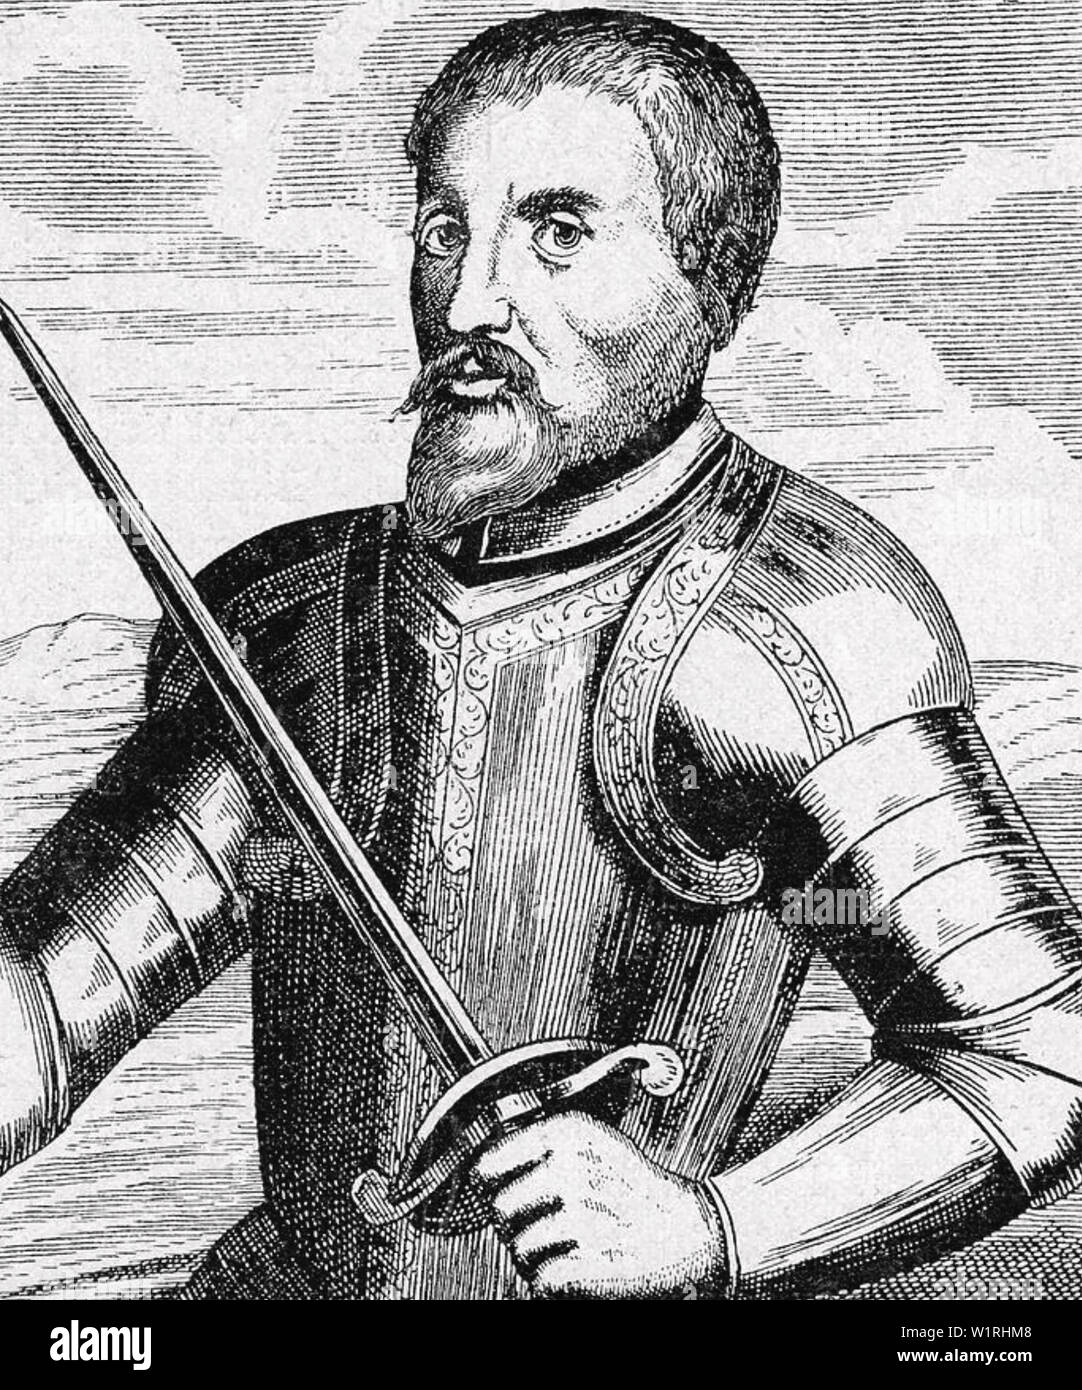 HERNANDO de SOTO (c 1500-1542) Spanish explorer and conquistador Stock Photo